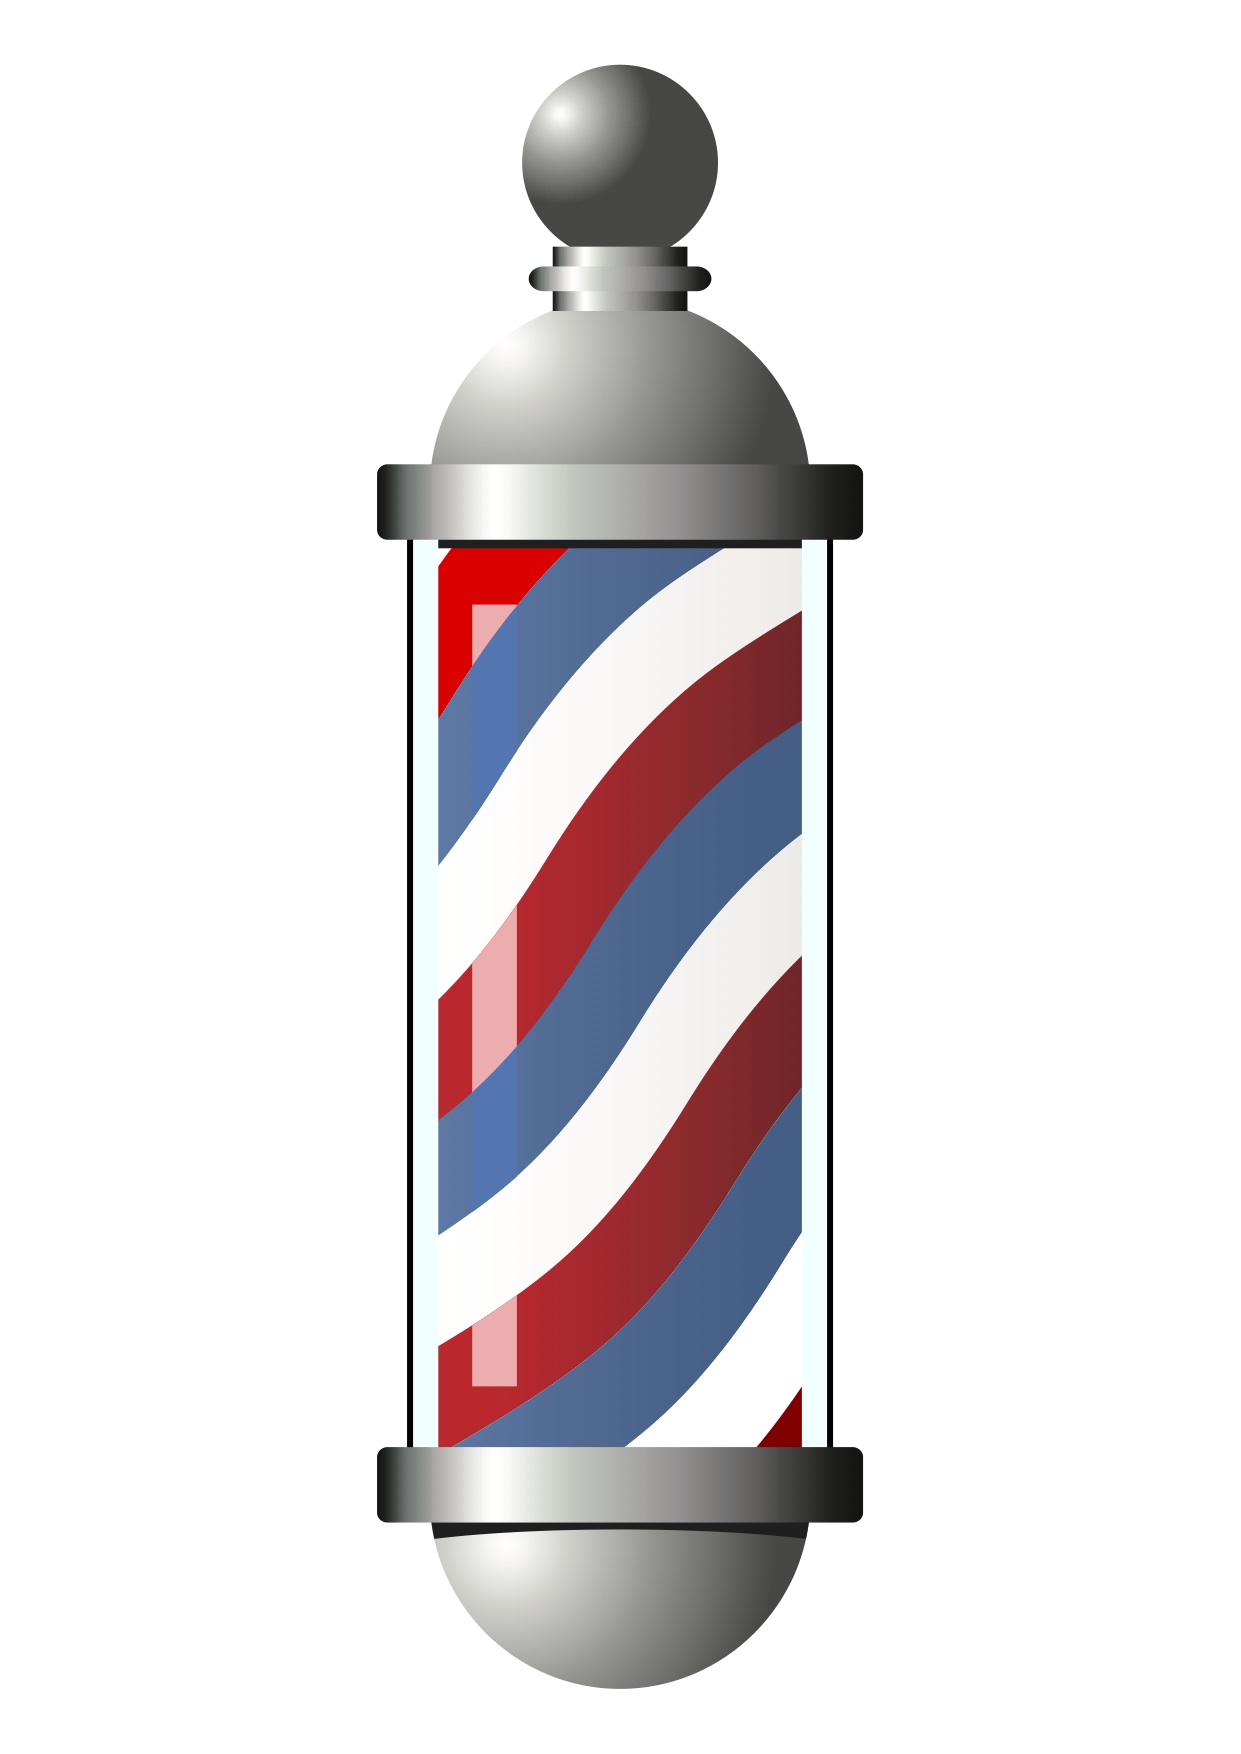 Download hd Barbershop Vector Lampu Graphic Transparent Download